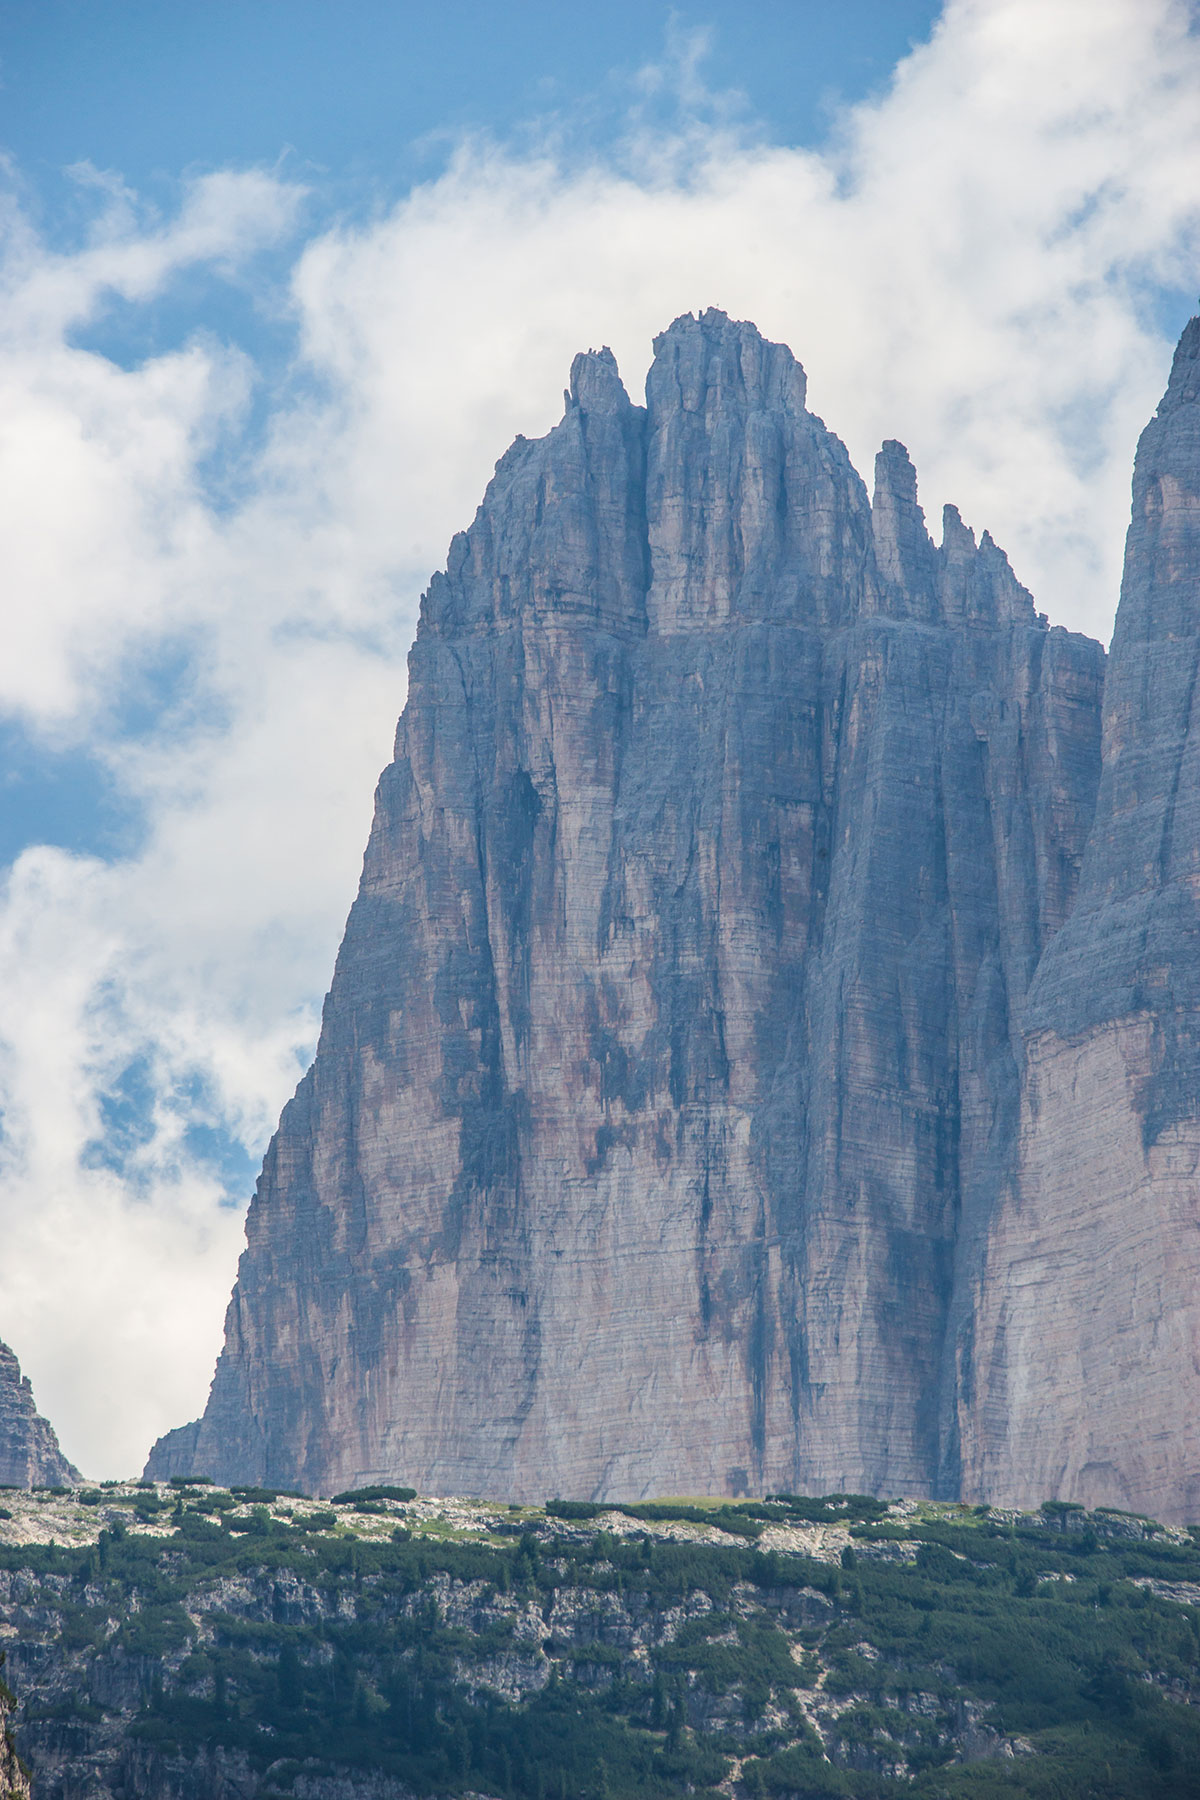 Big Pinnacle of the Three Peaks Dolomites, Italy - 